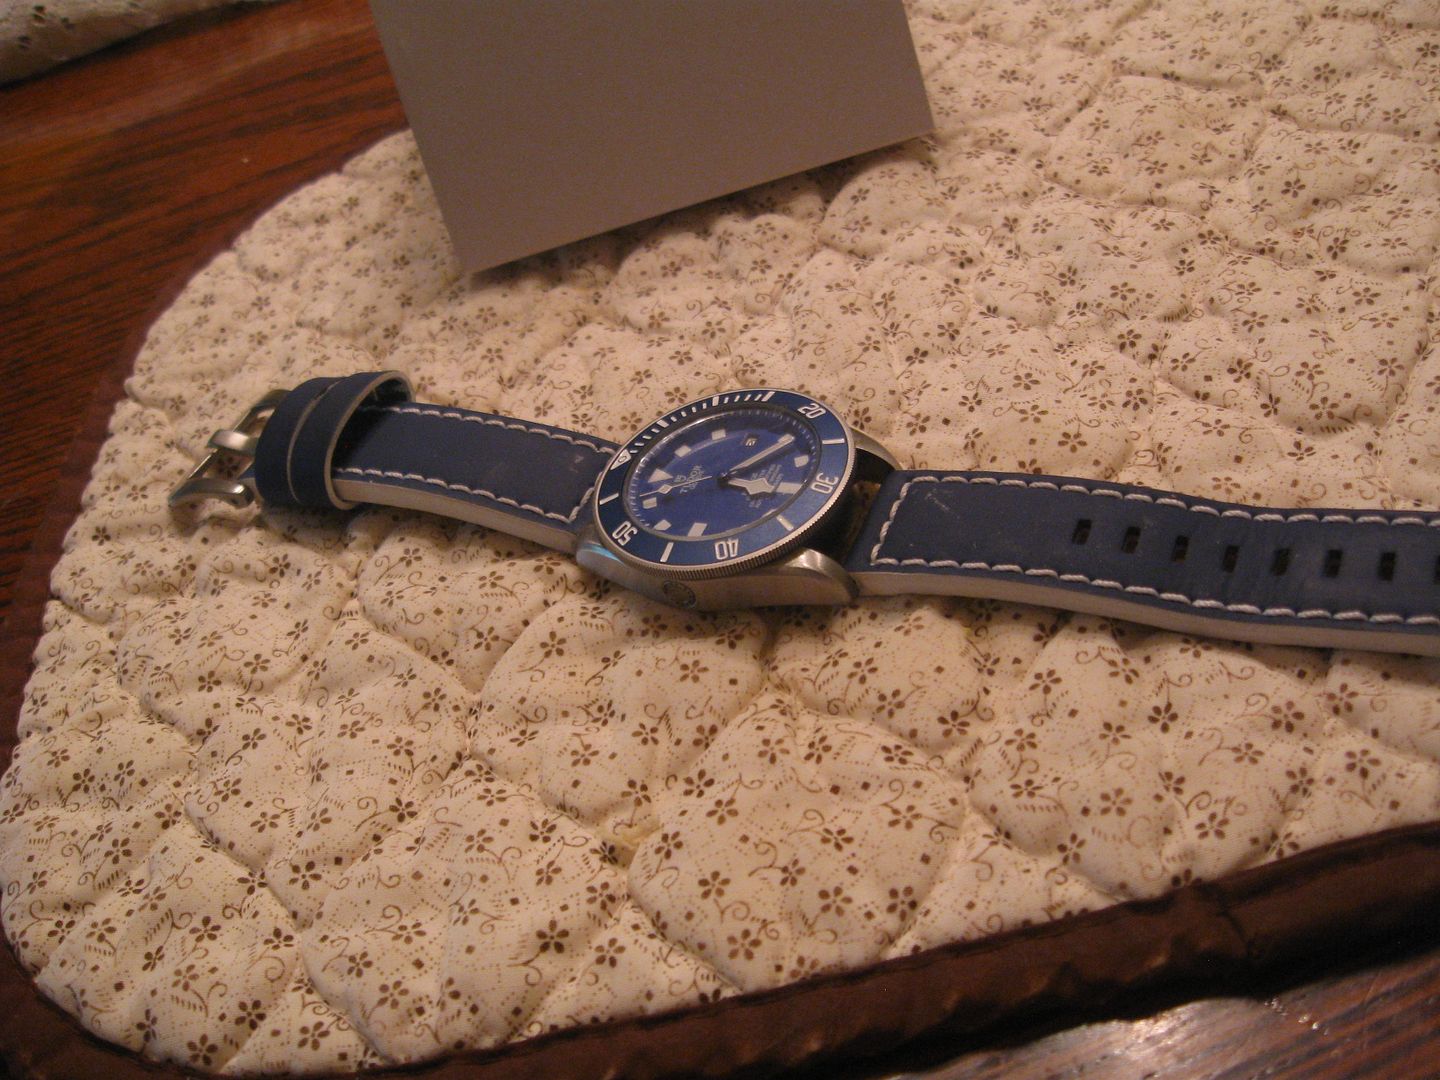 New.S.S.Bracelet.on.BLUE.Tudor.Pelagos%2